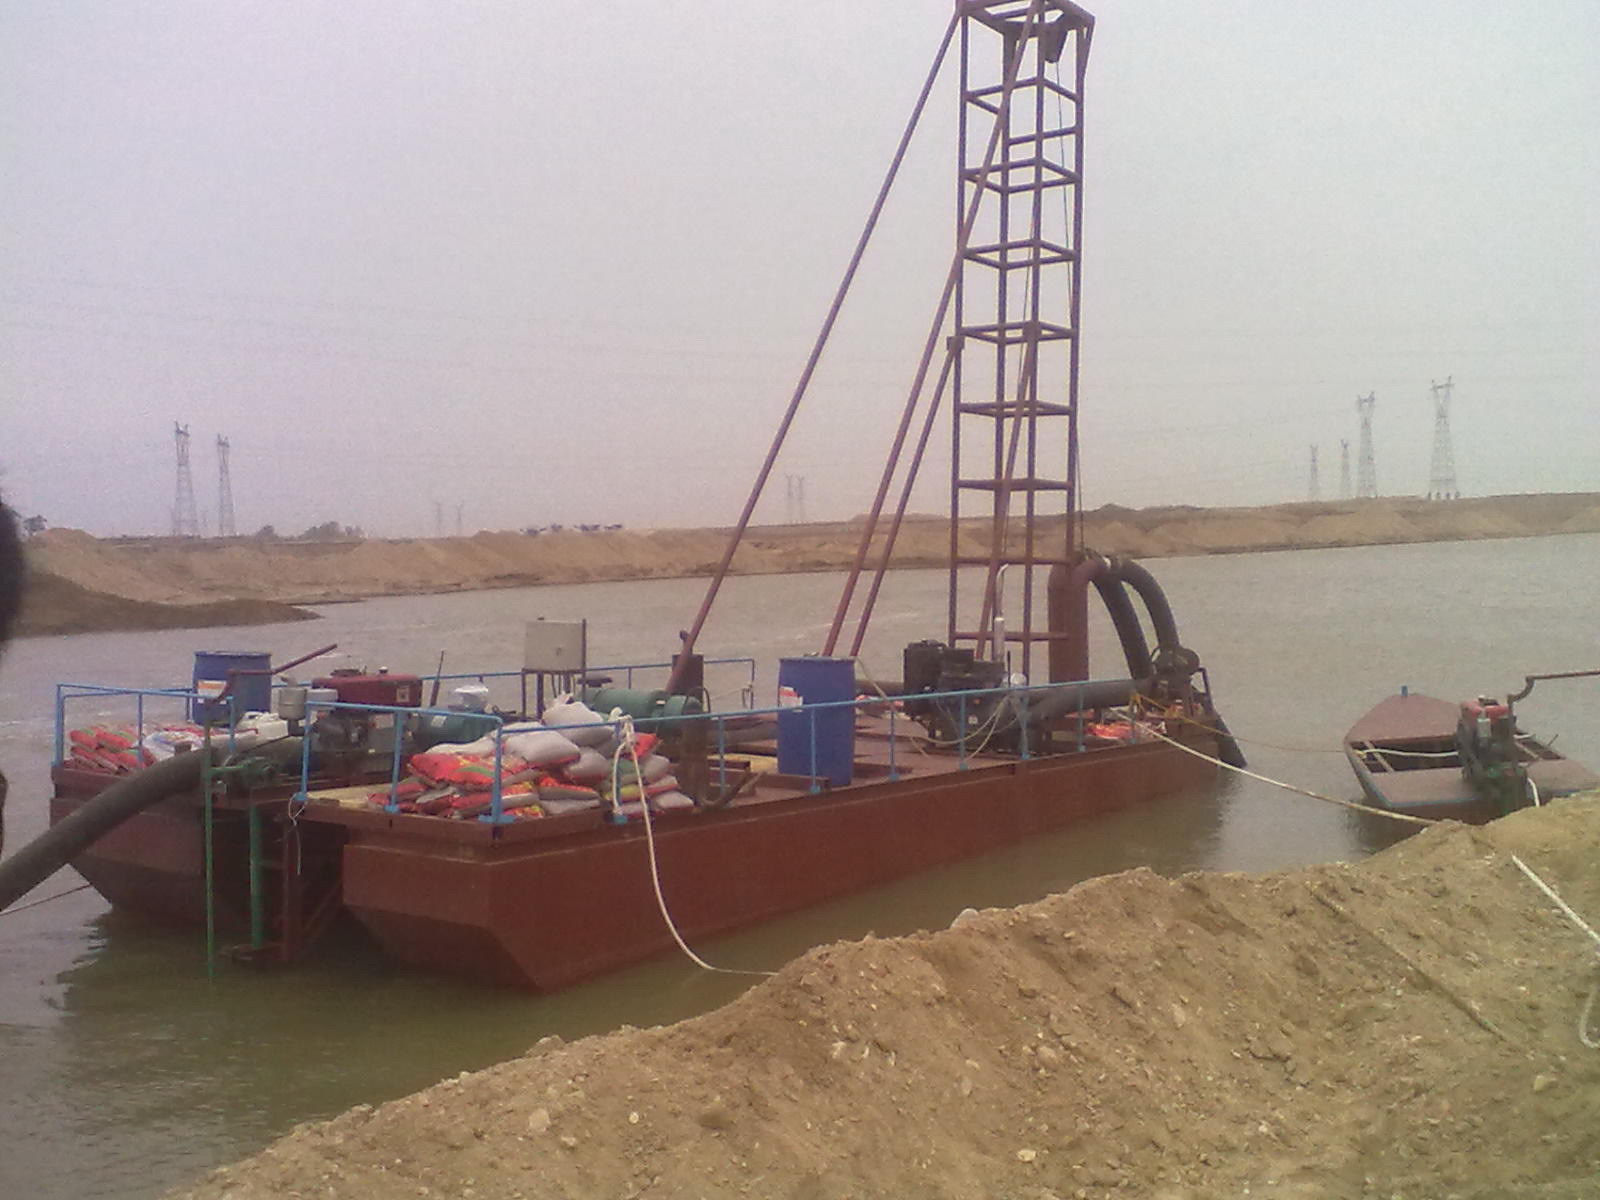 供应抽沙船(图) 采沙船 吸沙船 兴富机械 品质保证